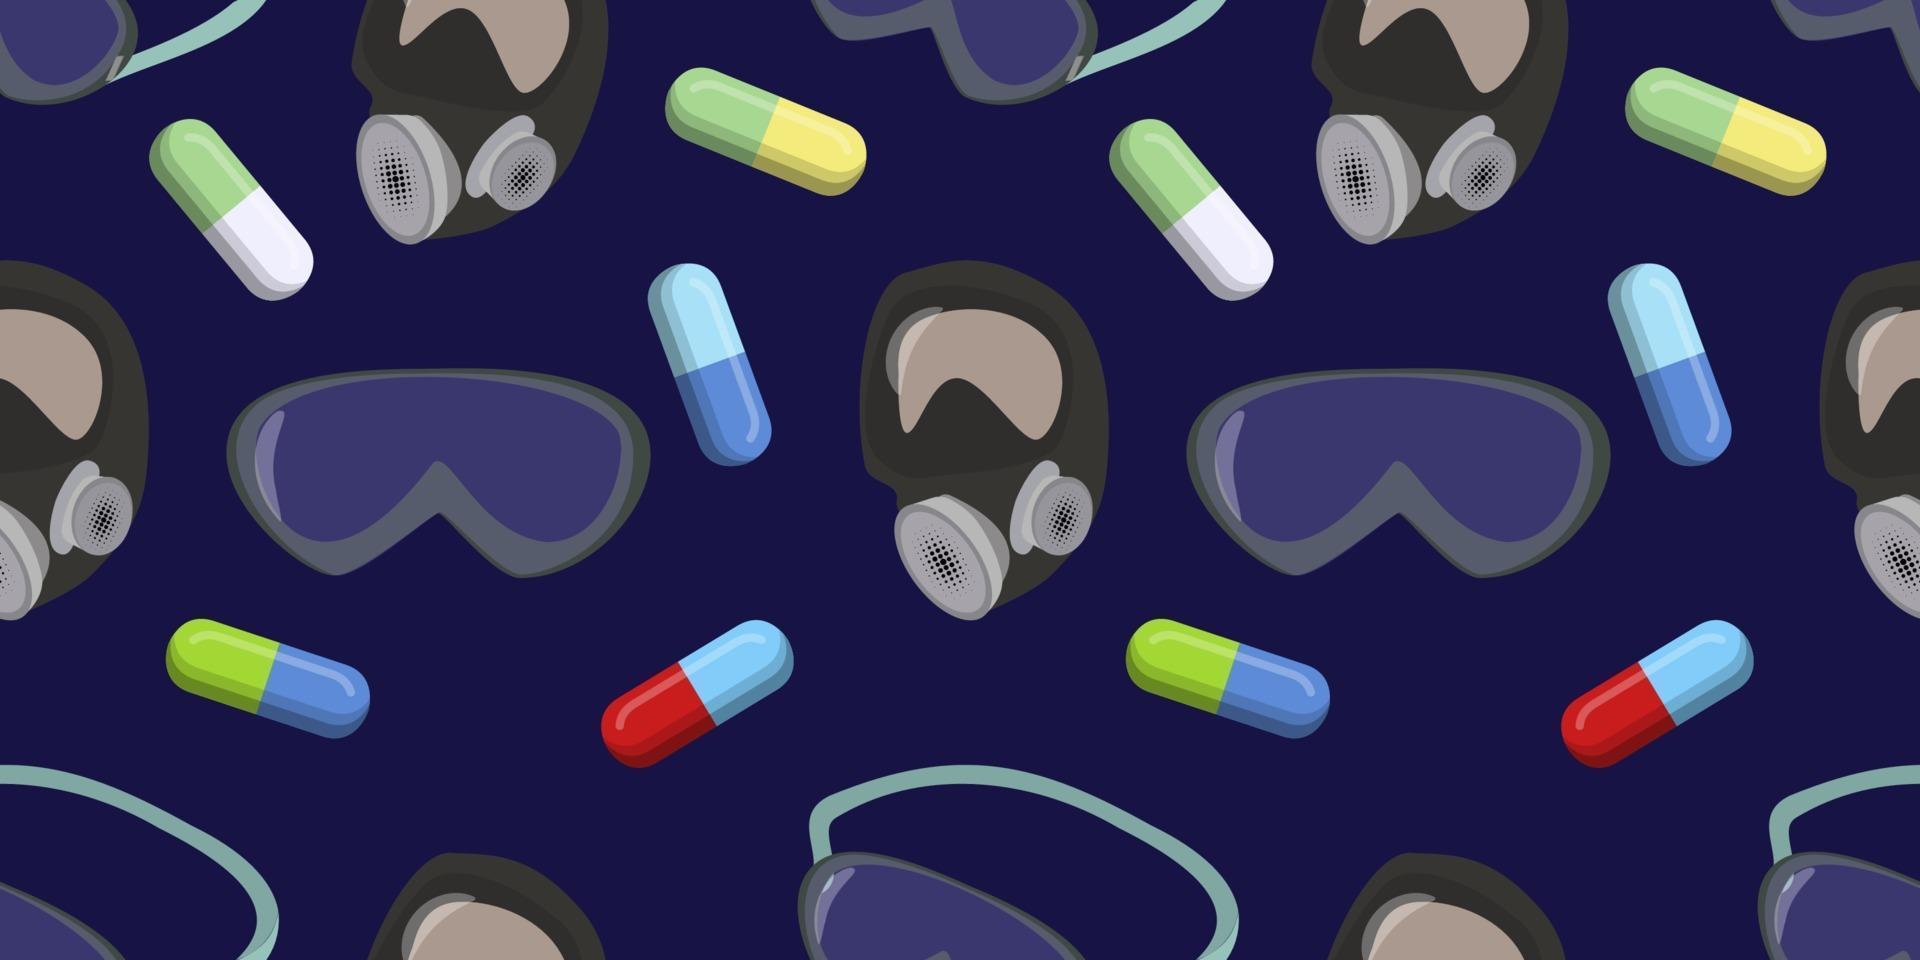 vektorgrafik över färgade kapselpiller, skyddsglasögon och skyddsmasker sömlöst mönster på mörk bakgrund. virus skydd. sjukvård medicinsk och vektor illustration.